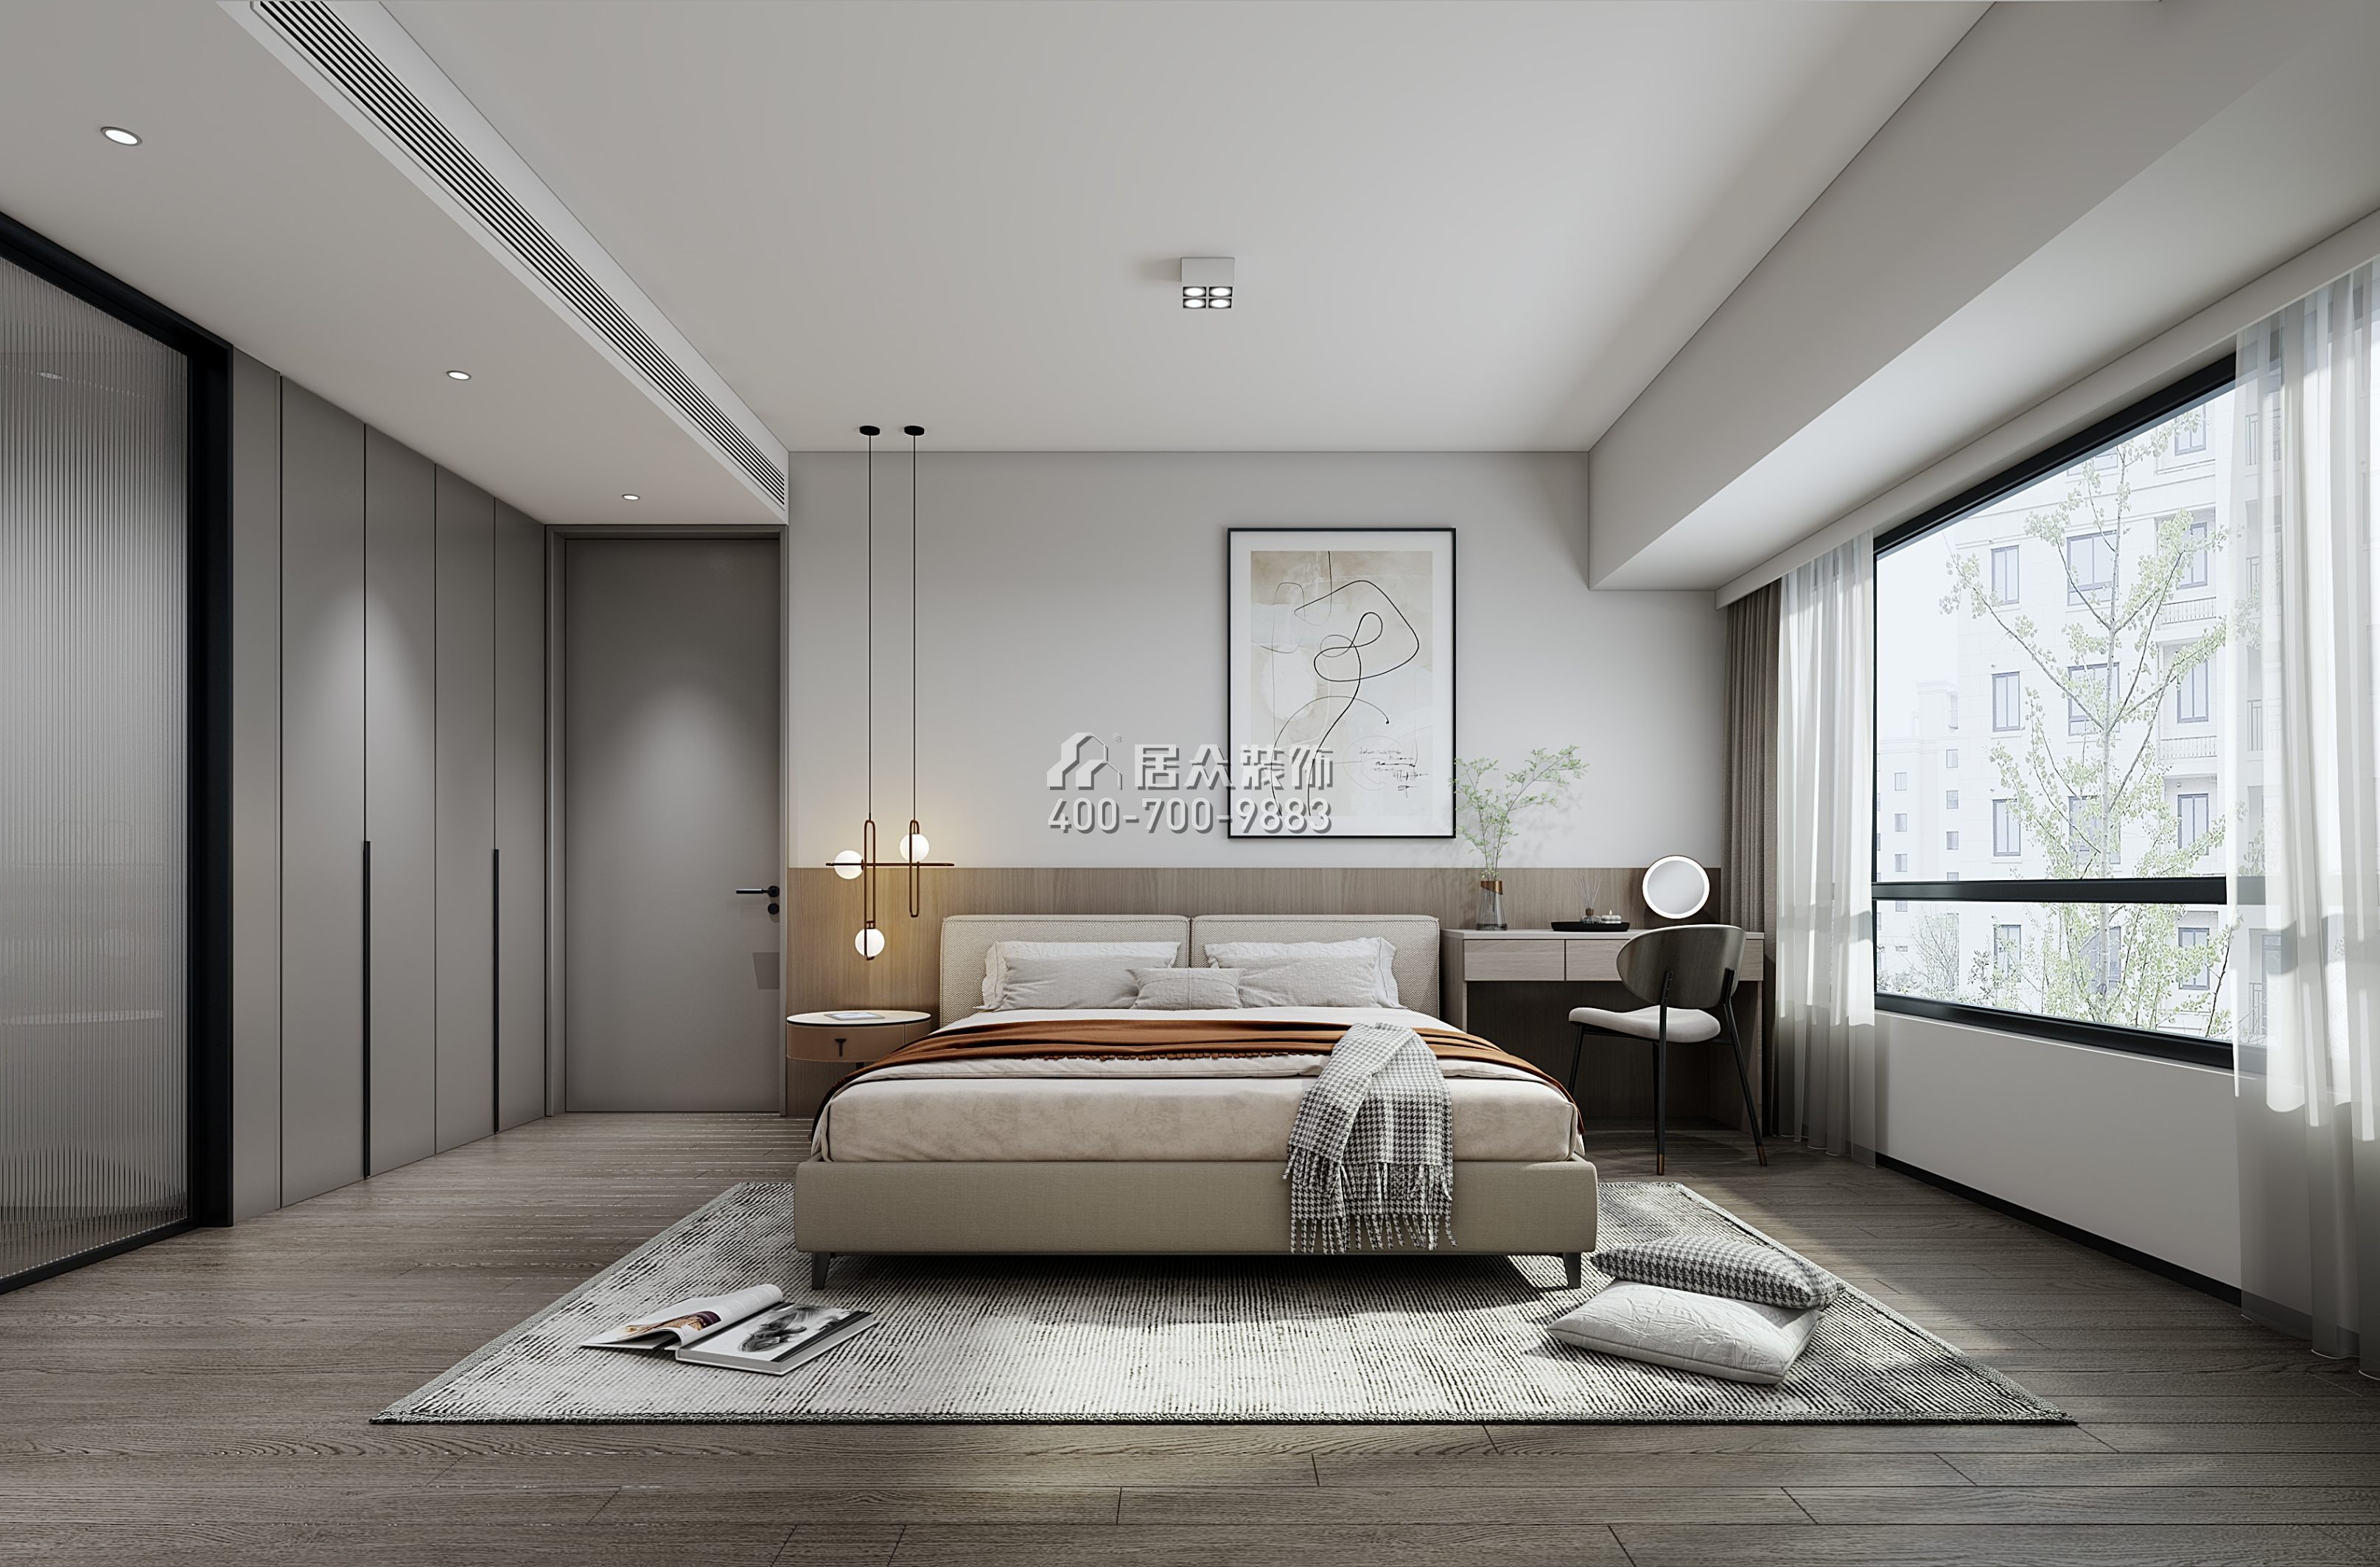 新锦安海纳公馆116平方米现代简约风格平层户型卧室装修效果图